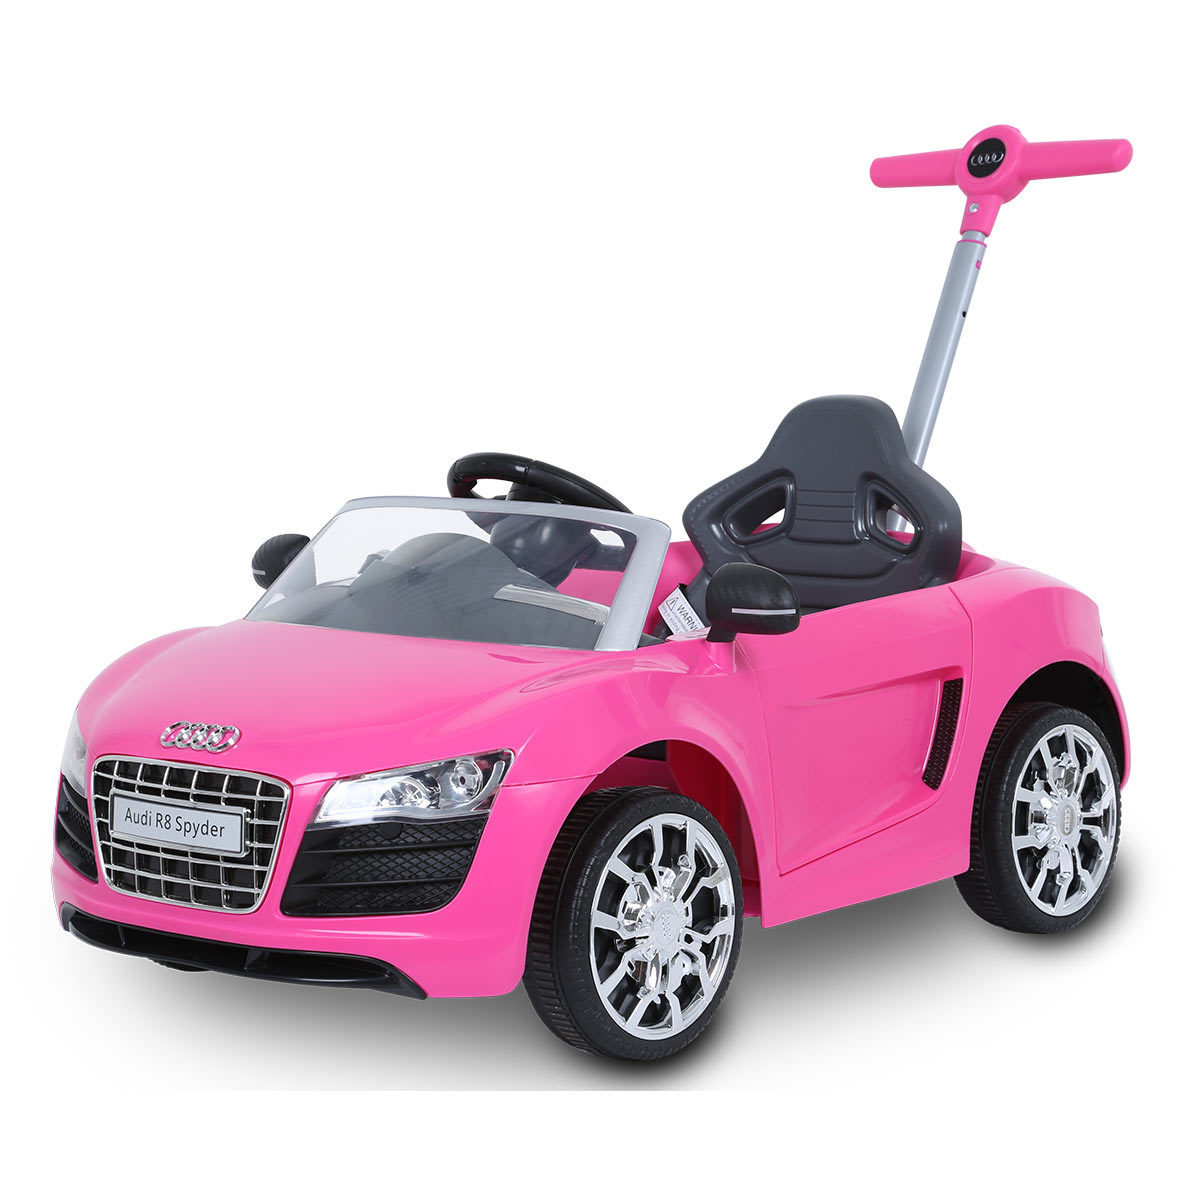 ride on push car pink